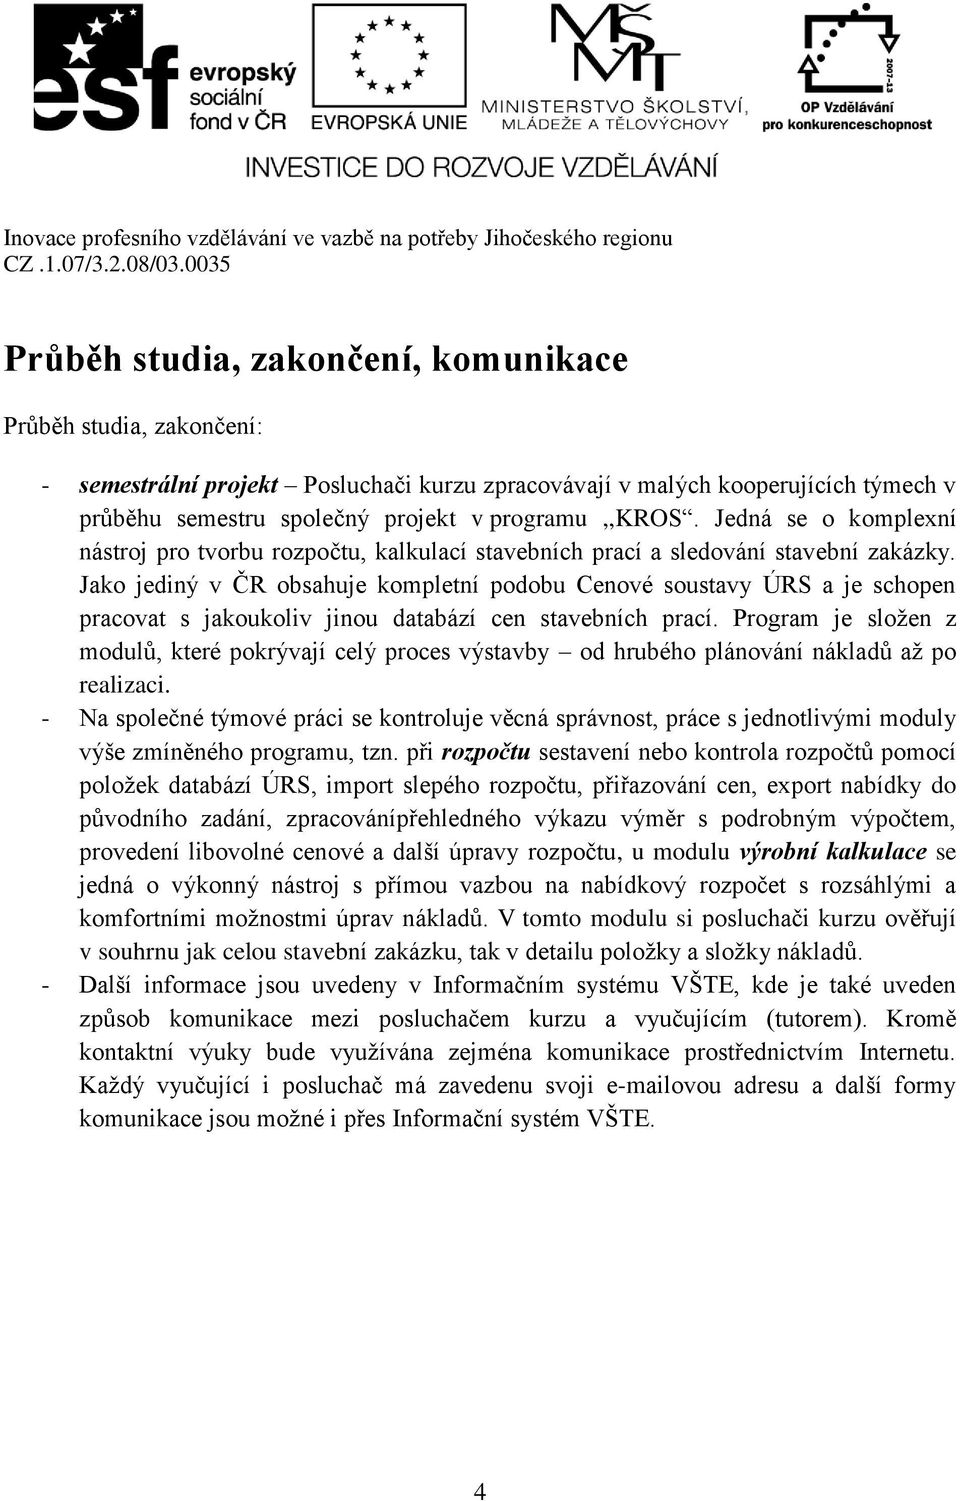 Jako jediný v ČR obsahuje kompletní podobu Cenové soustavy ÚRS a je schopen pracovat s jakoukoliv jinou databází cen stavebních prací.